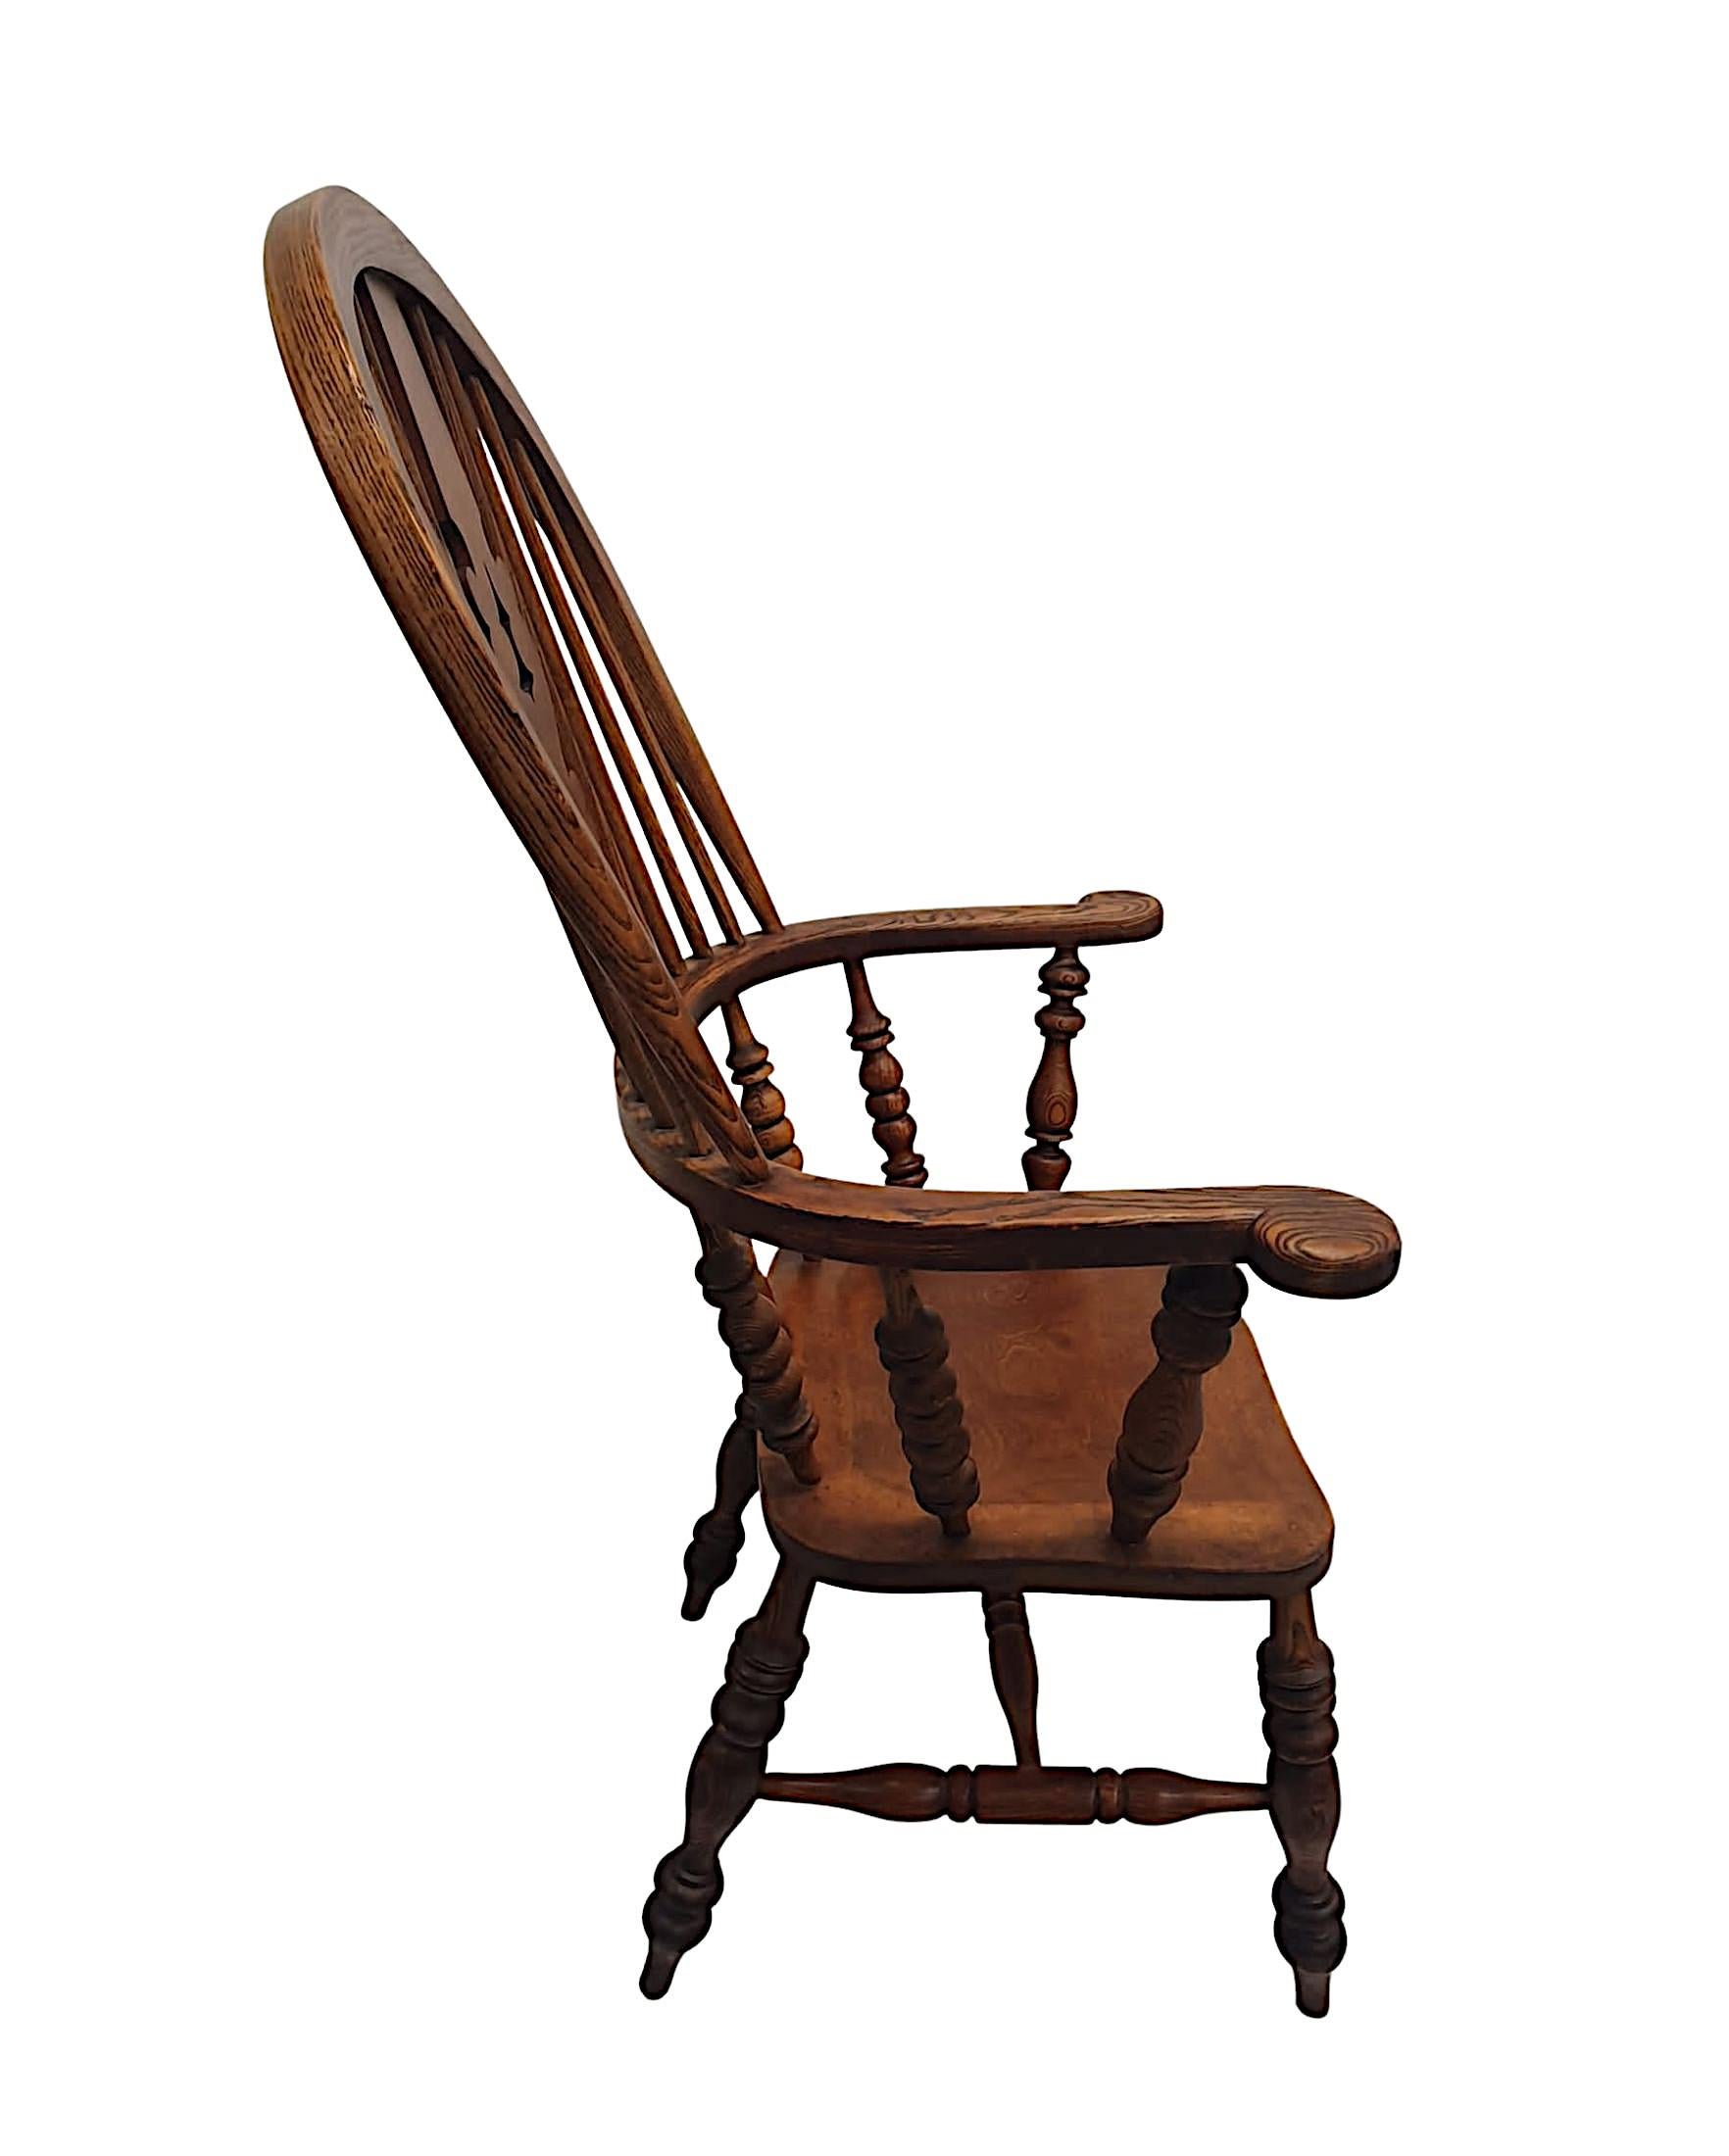 Rare fauteuil Windsor en frêne et orme du XIXe siècle, à larges accoudoirs, d'une qualité exceptionnelle, finement sculpté à la main, avec une patine et un grain d'une grande richesse. Le haut dossier en forme d'arceau est doté d'un dosseret central